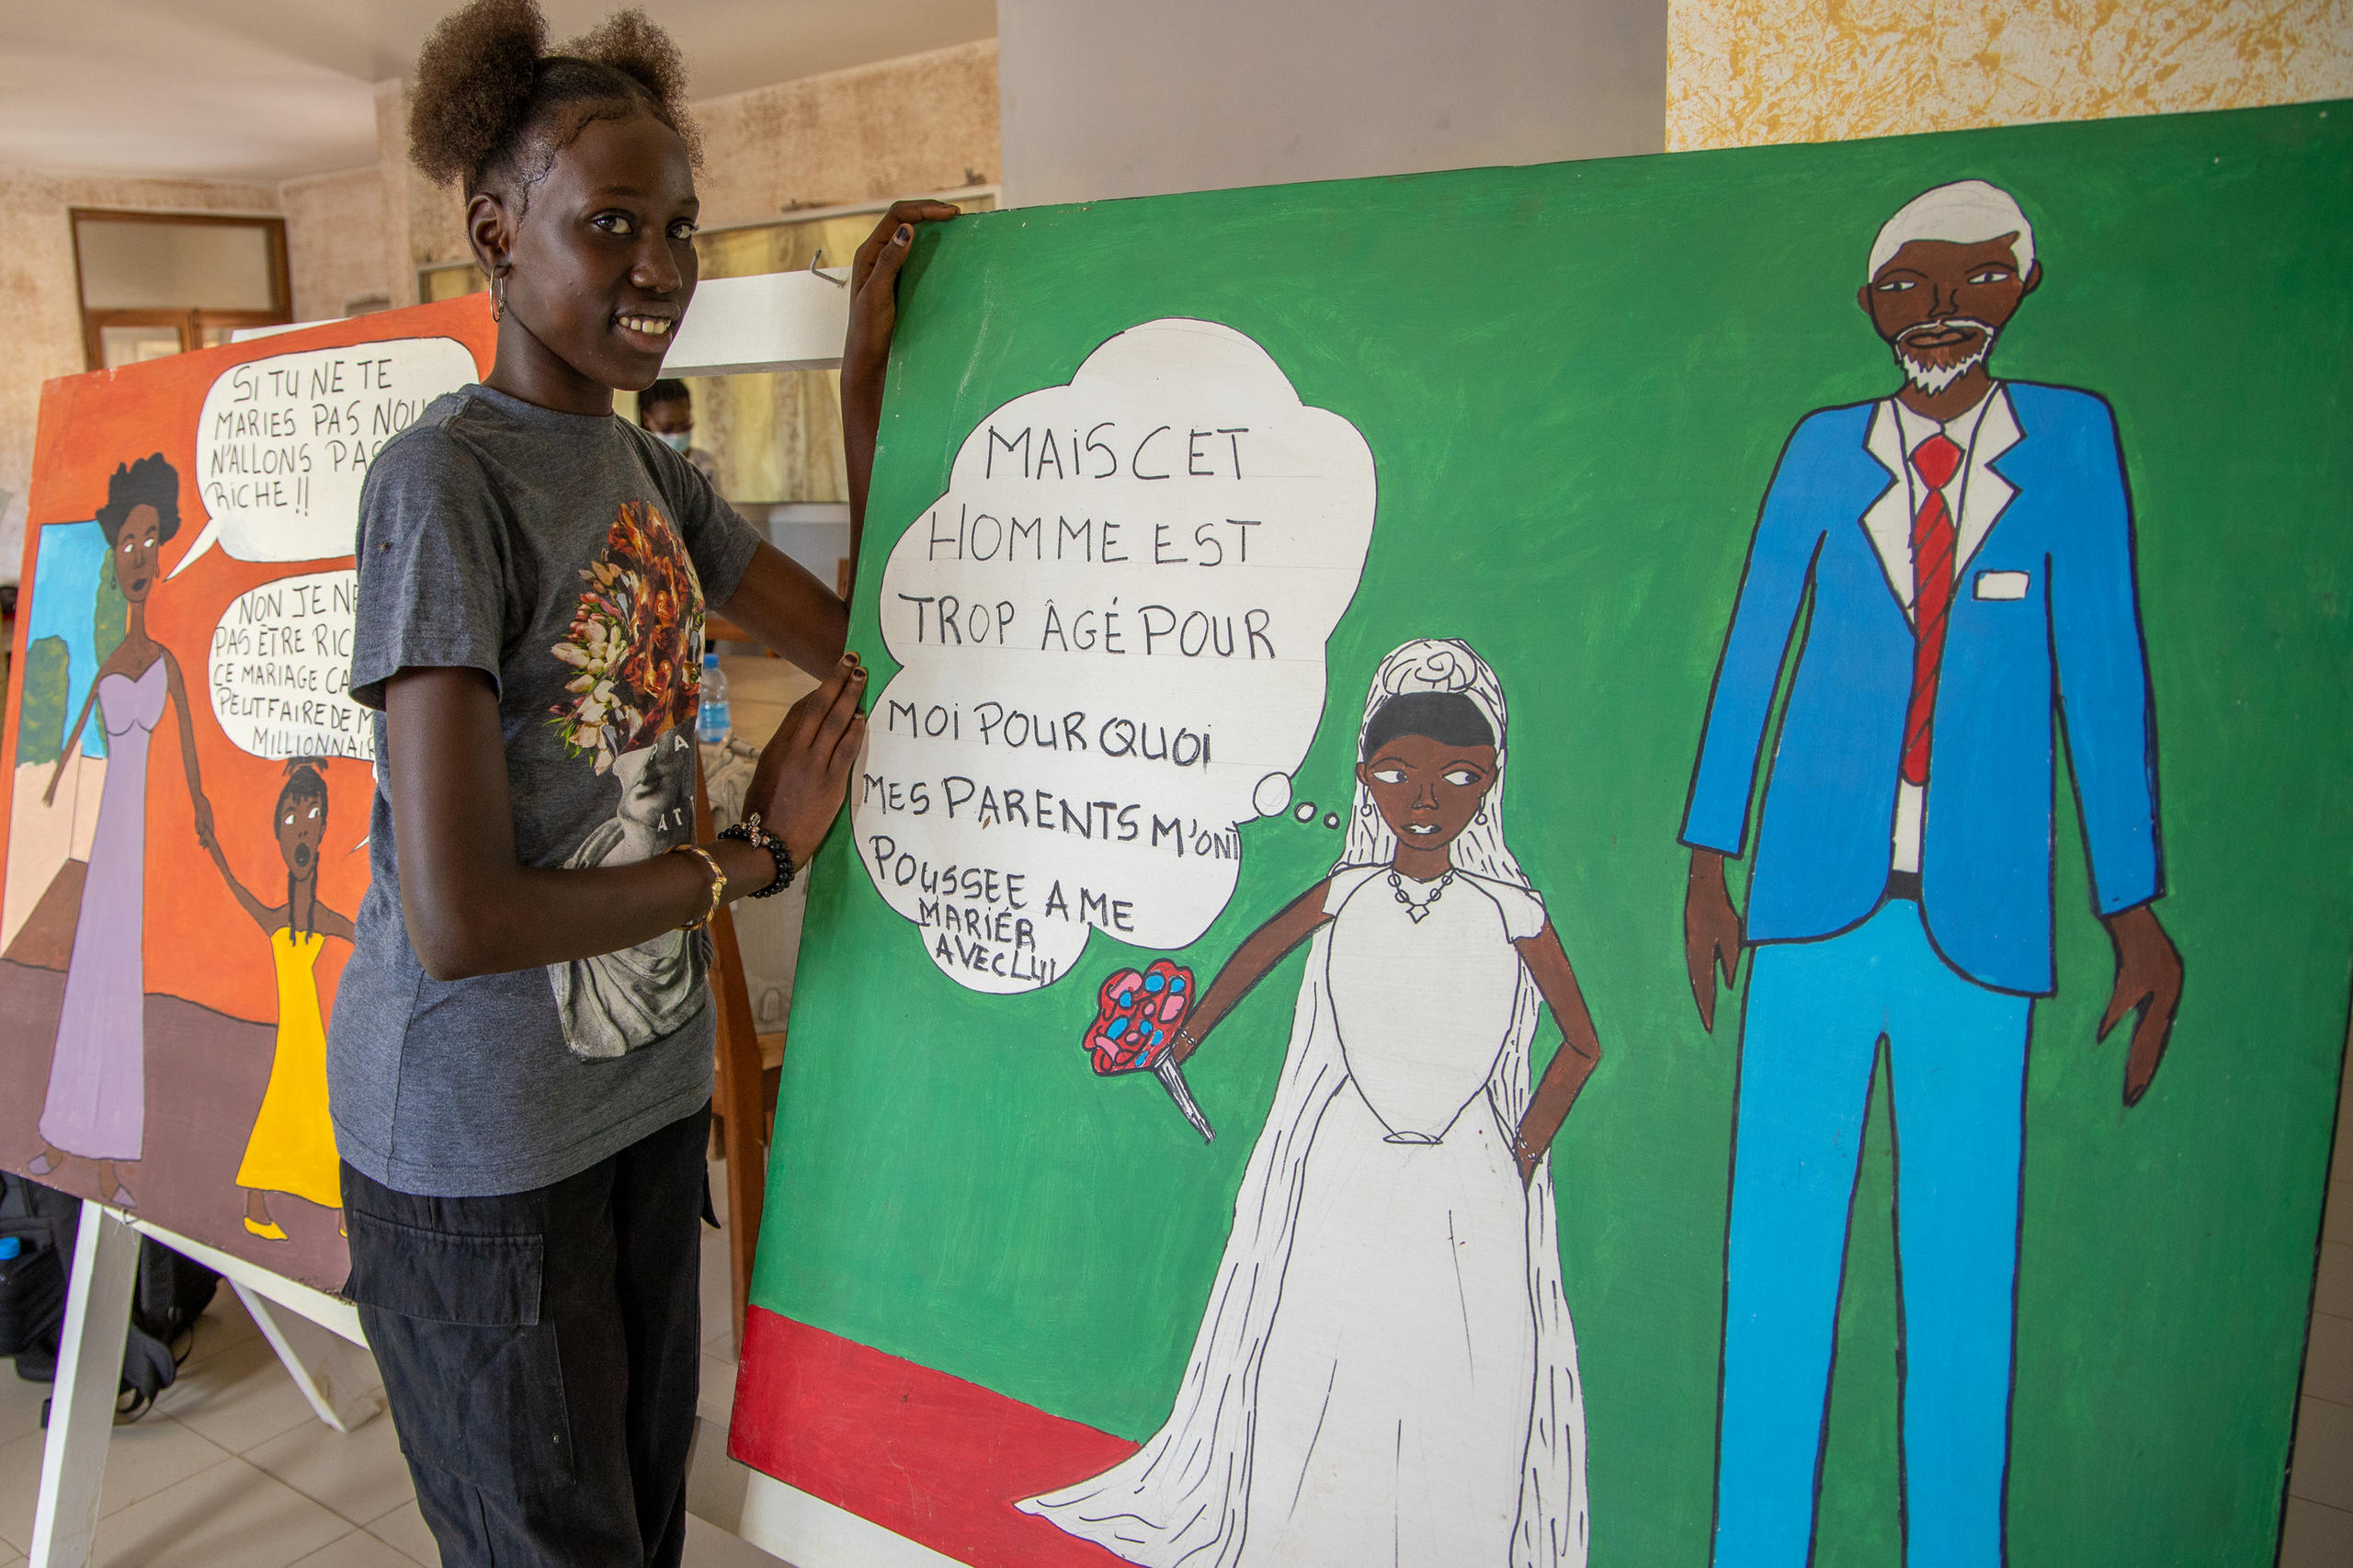 Una joven posa delante de una pintura que denuncia los matrimonios forzados